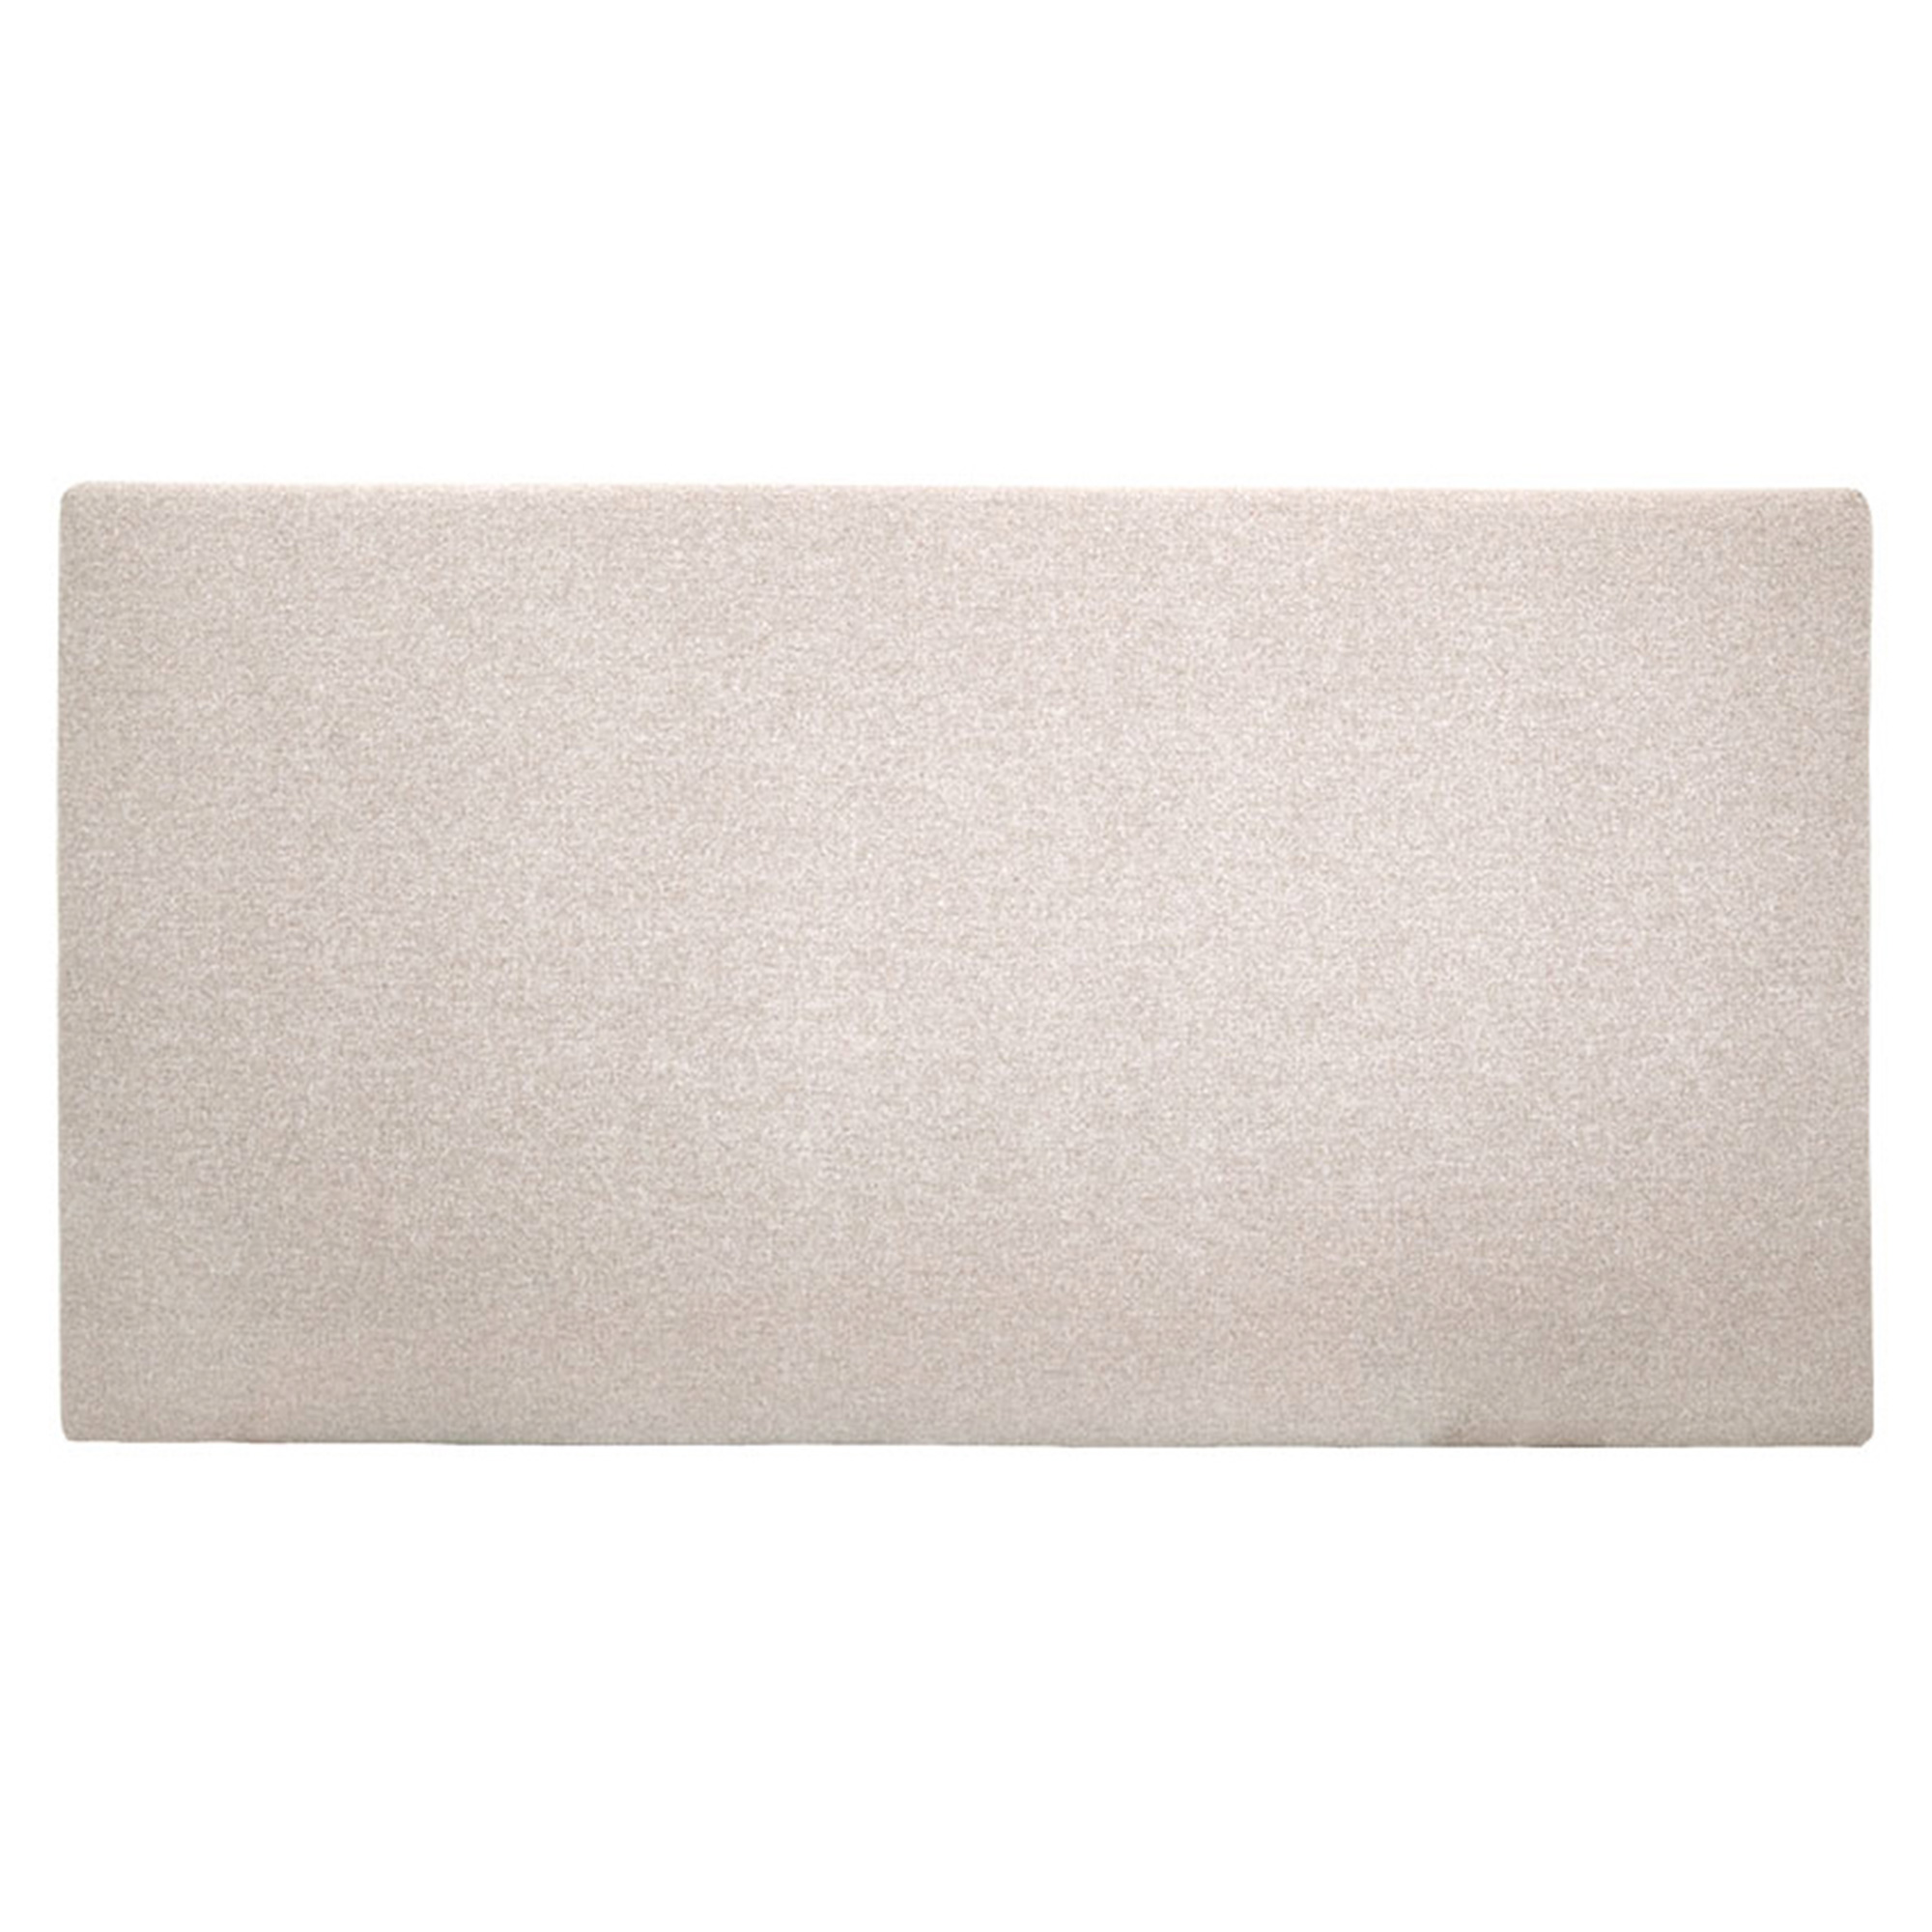 Tête de lit polyester lisse couleur beige 200x80cm